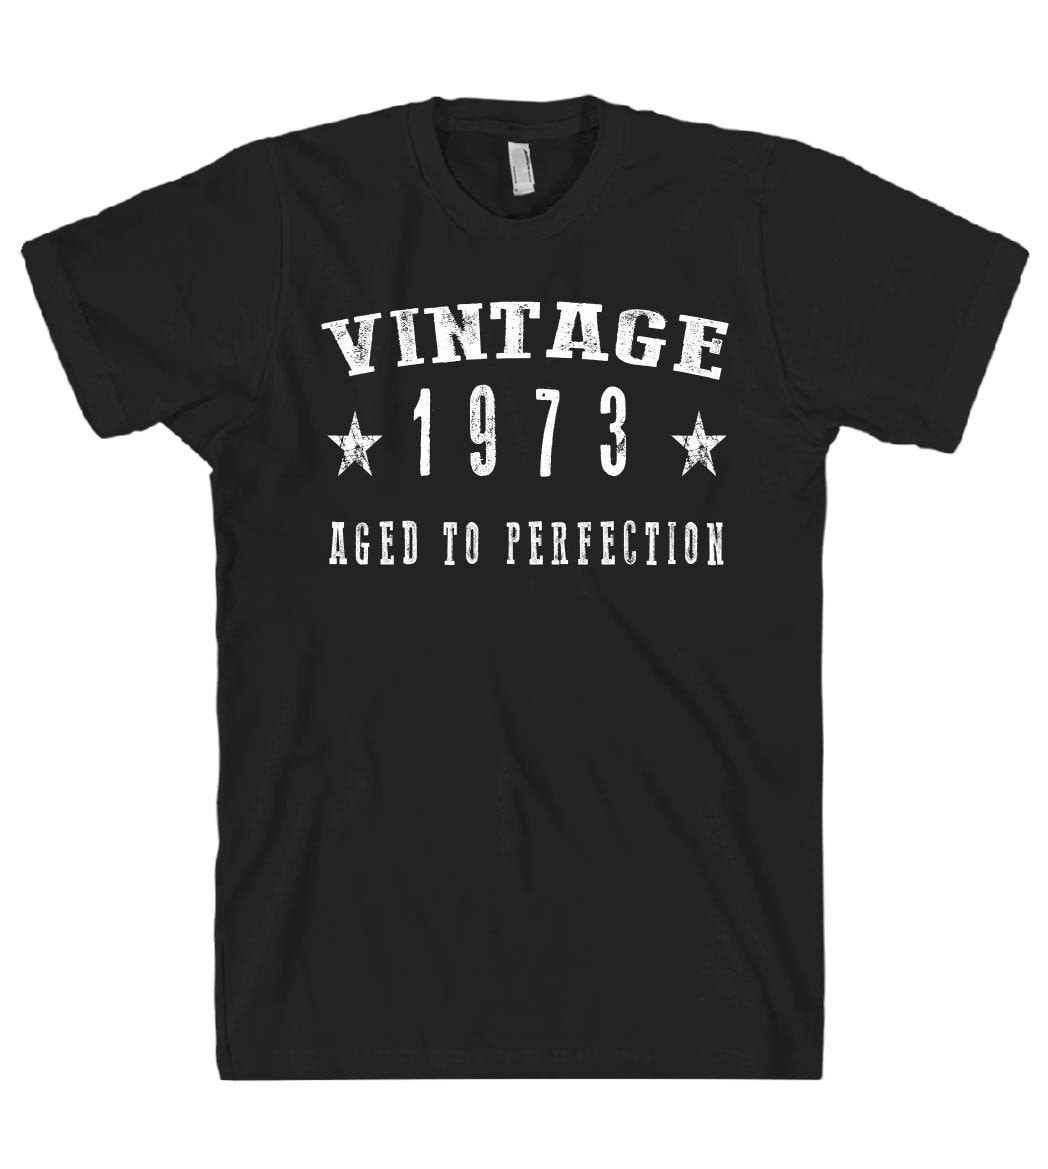 vintage 1973 tshirt - Shirtoopia